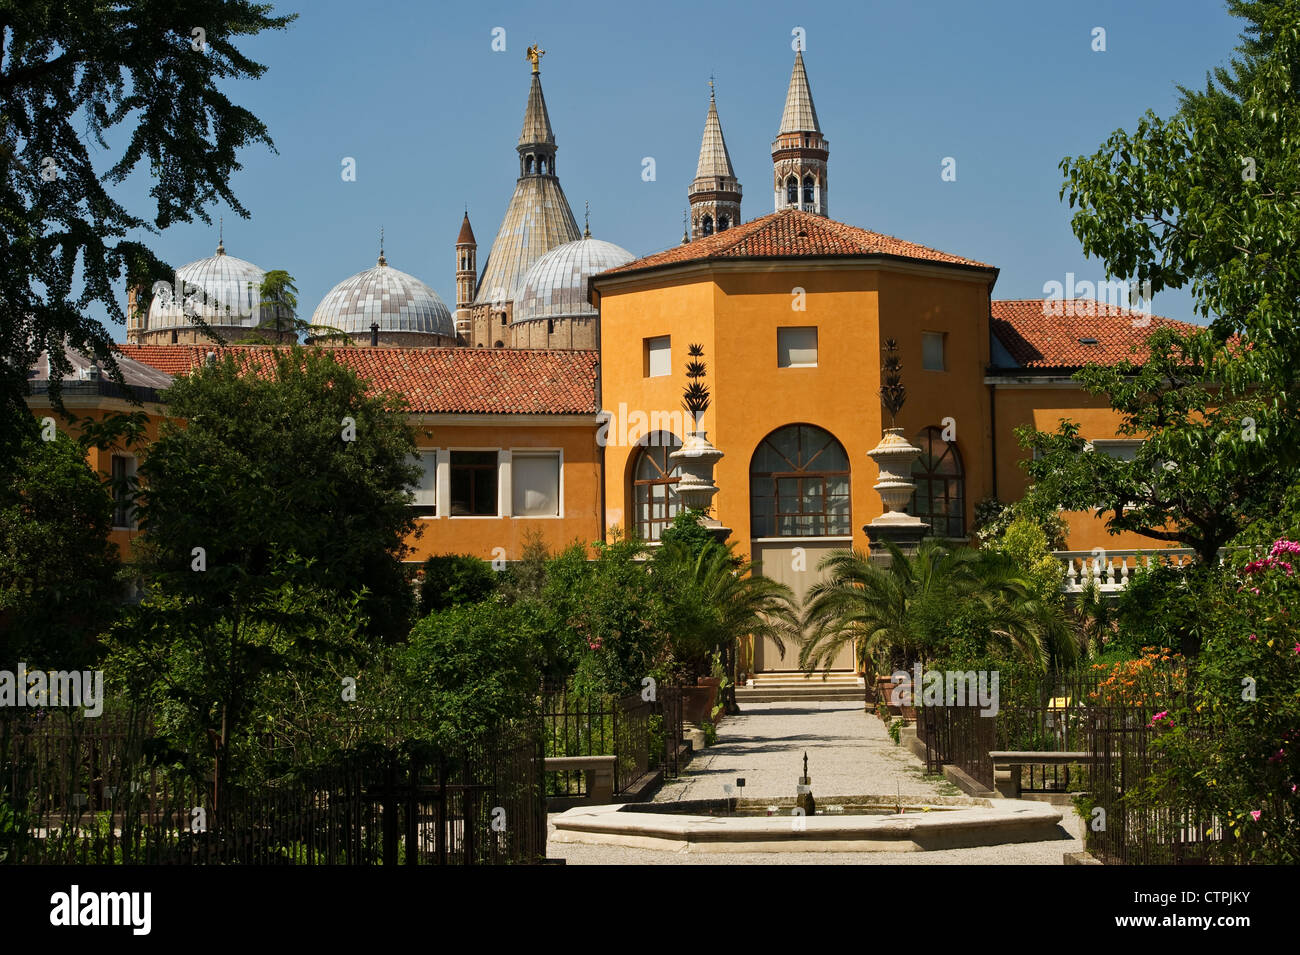 El Jardín Botánico de Padua, Italia, (Orto Botanico di Padova), fundado en 1545. La Basílica de Sant'Antonio está al fondo Foto de stock